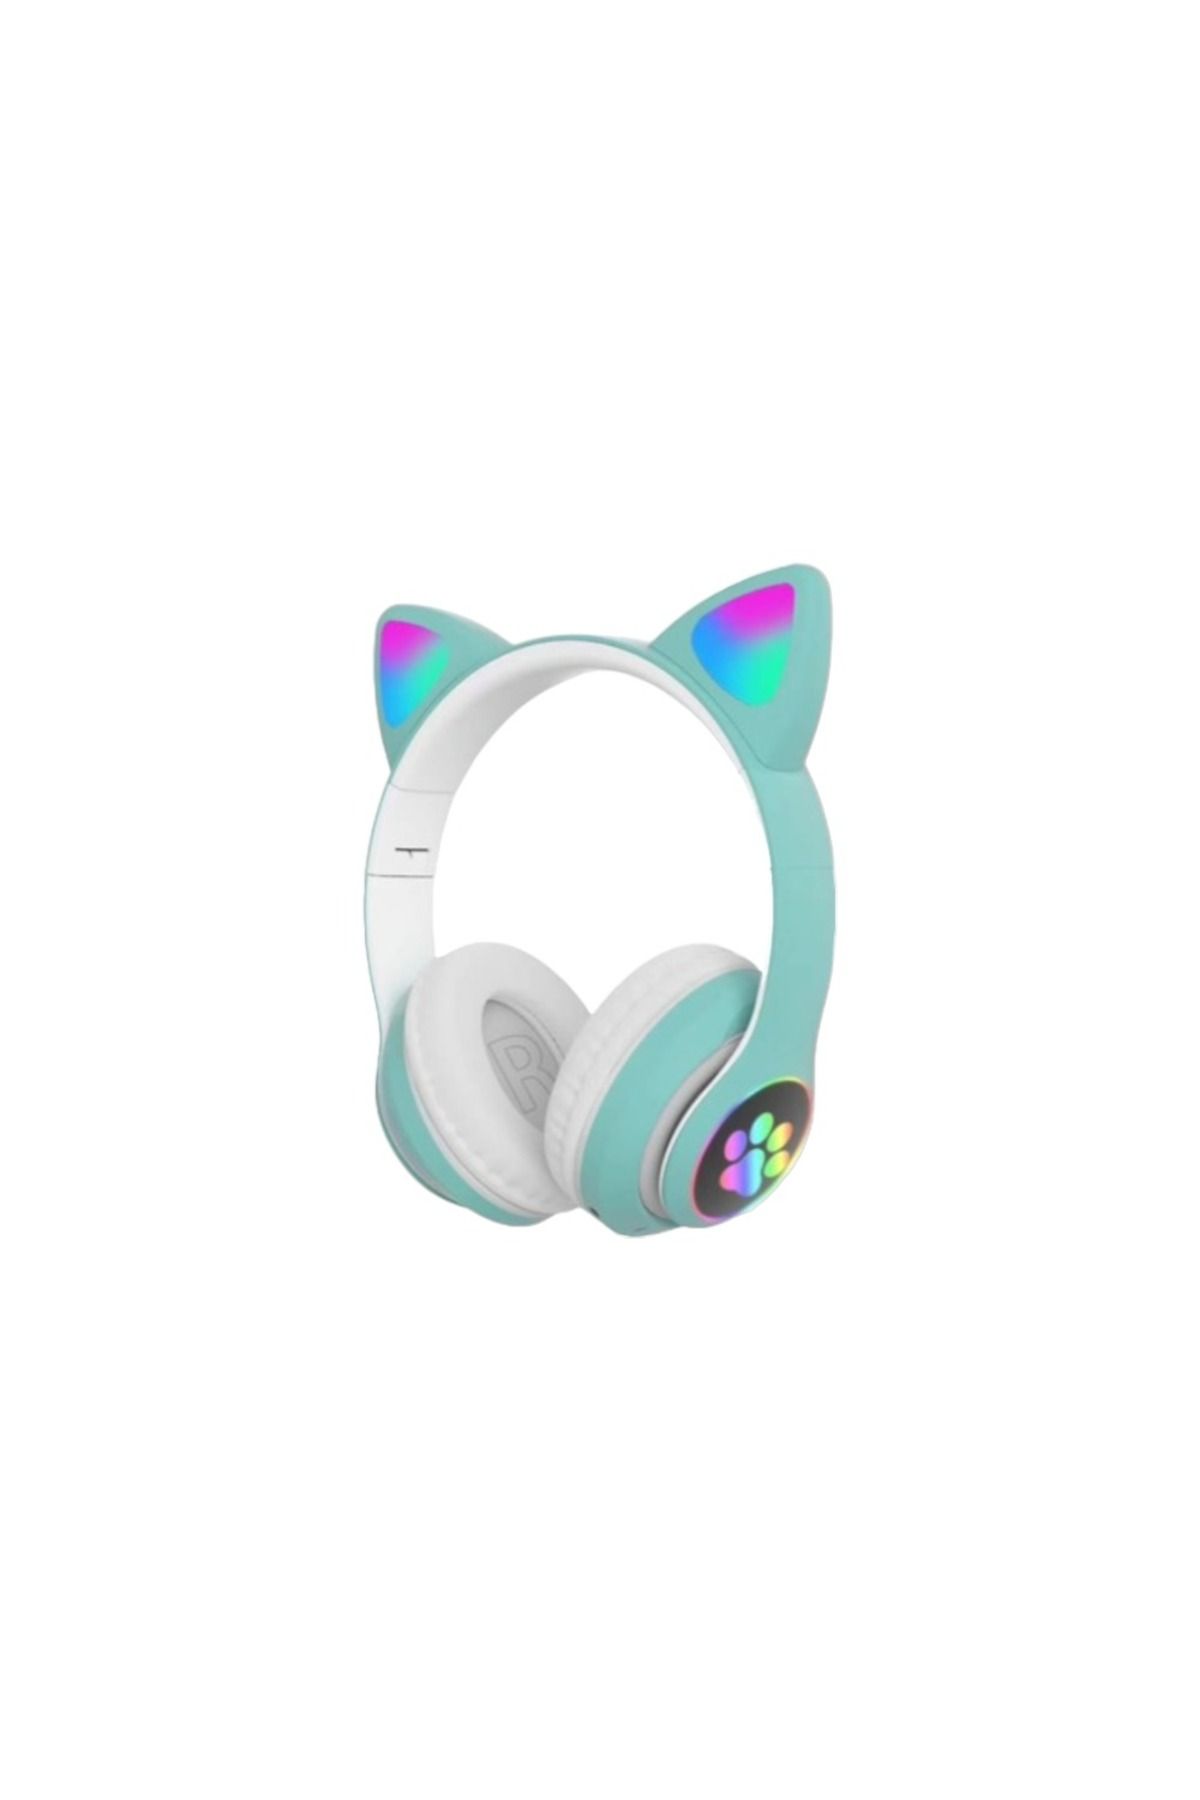 SPRANGE Kedi Figürlü Işıklı Bluetooth Kulaklık Kulak Üstü Mikrofonlu IOS Ve Android Uyumlu s-t-n-28 stn28